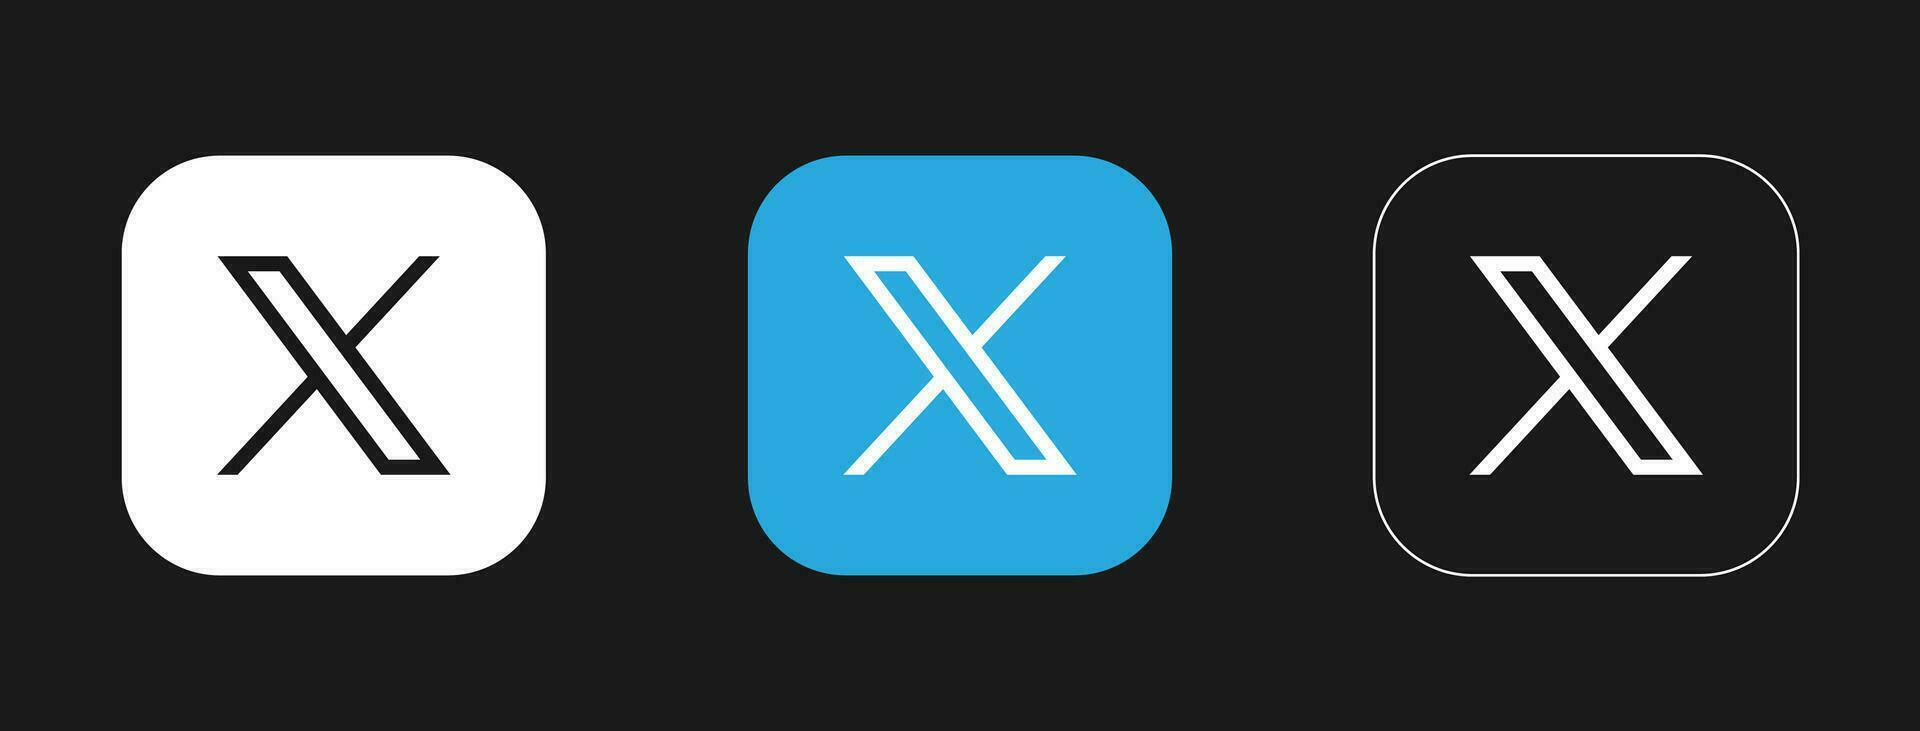 Twitter Nouveau X logo conception. Twitter X rebranding vecteur